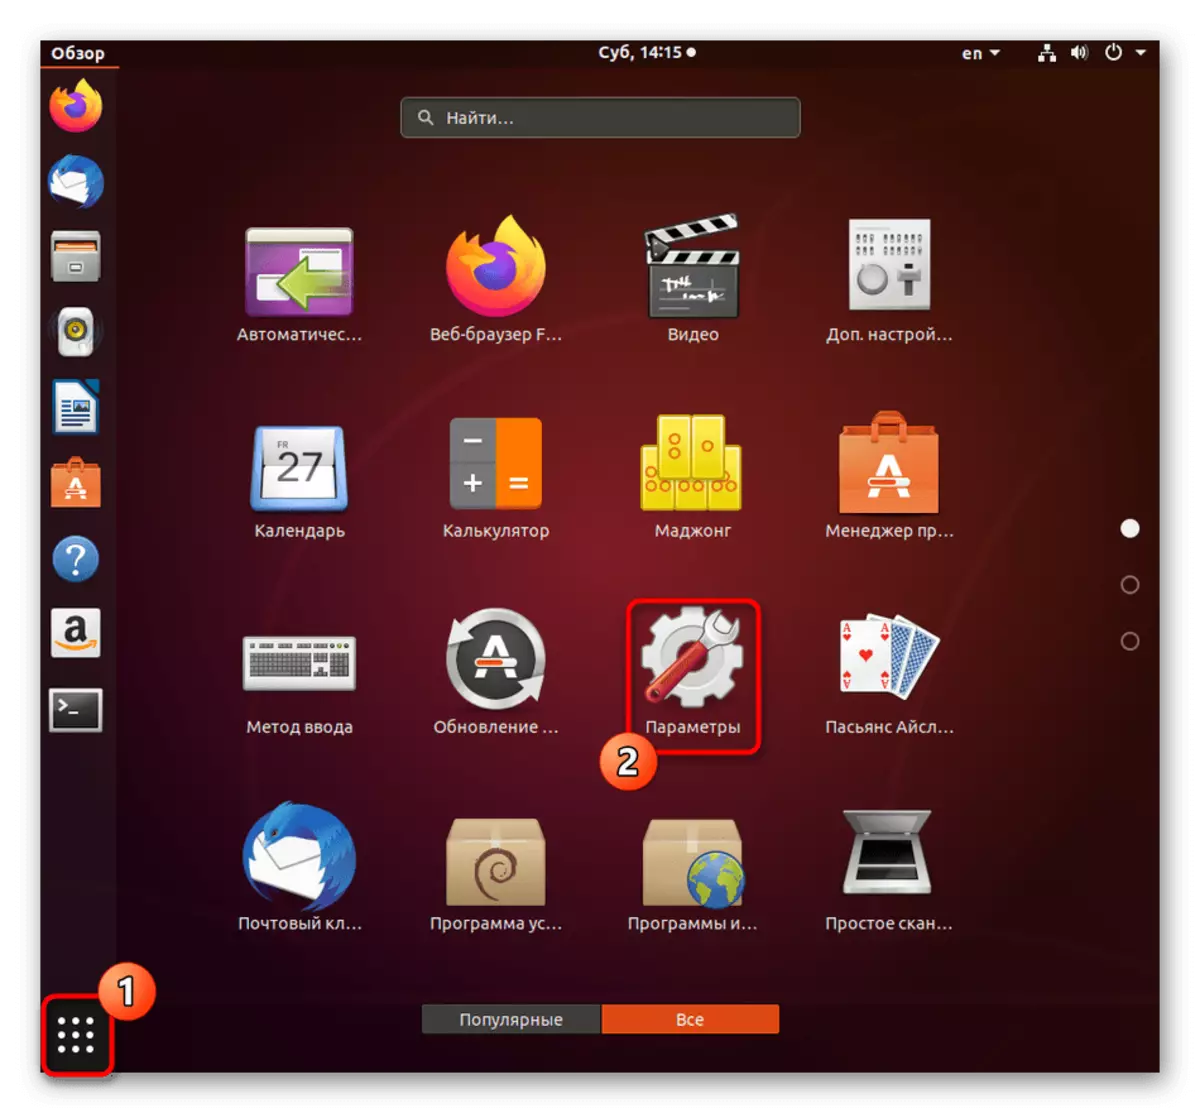 Gaan na parameters om 'n nuwe insette bron voeg by Ubuntu